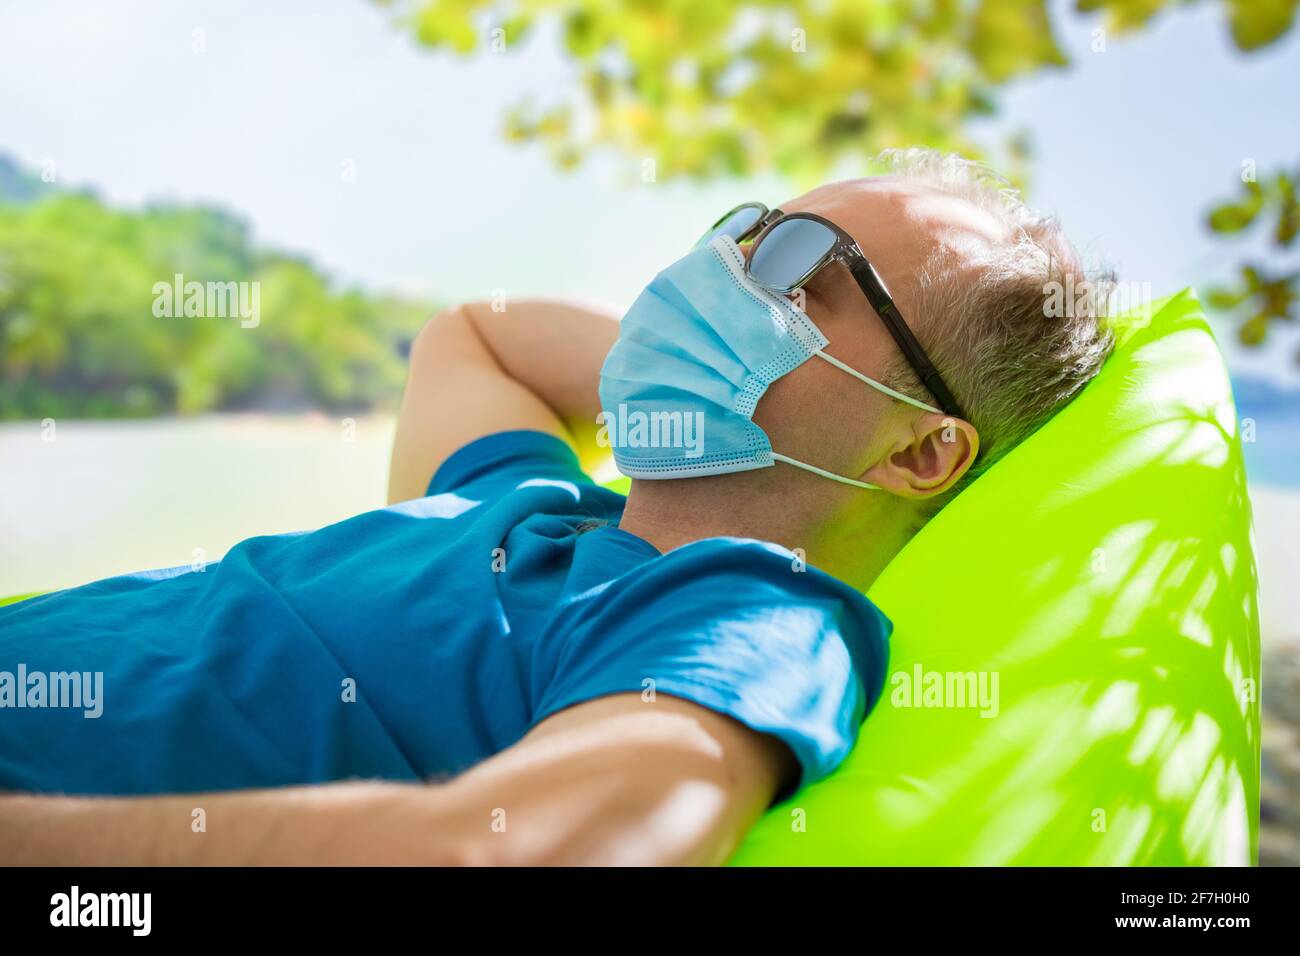 Homme mature dans un masque de protection et des lunettes de soleil se détendant sur la plage. Paysage tropical exotique avec eau turquoise et palmiers. Tourisme en cas de pandémie. Coffre-fort Banque D'Images